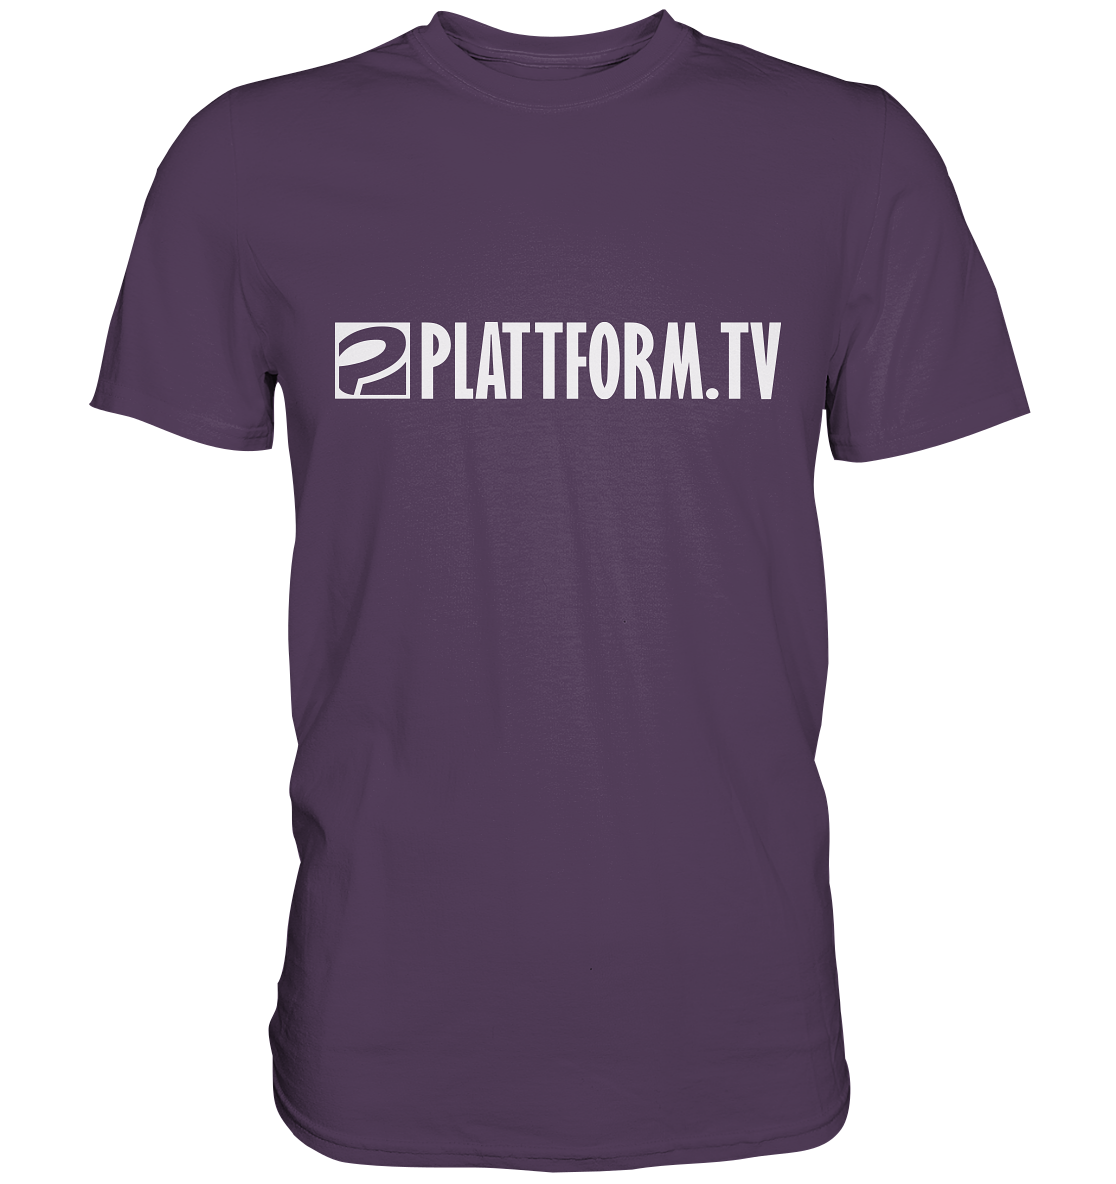 PLATTFORM.TV - Basic Shirt